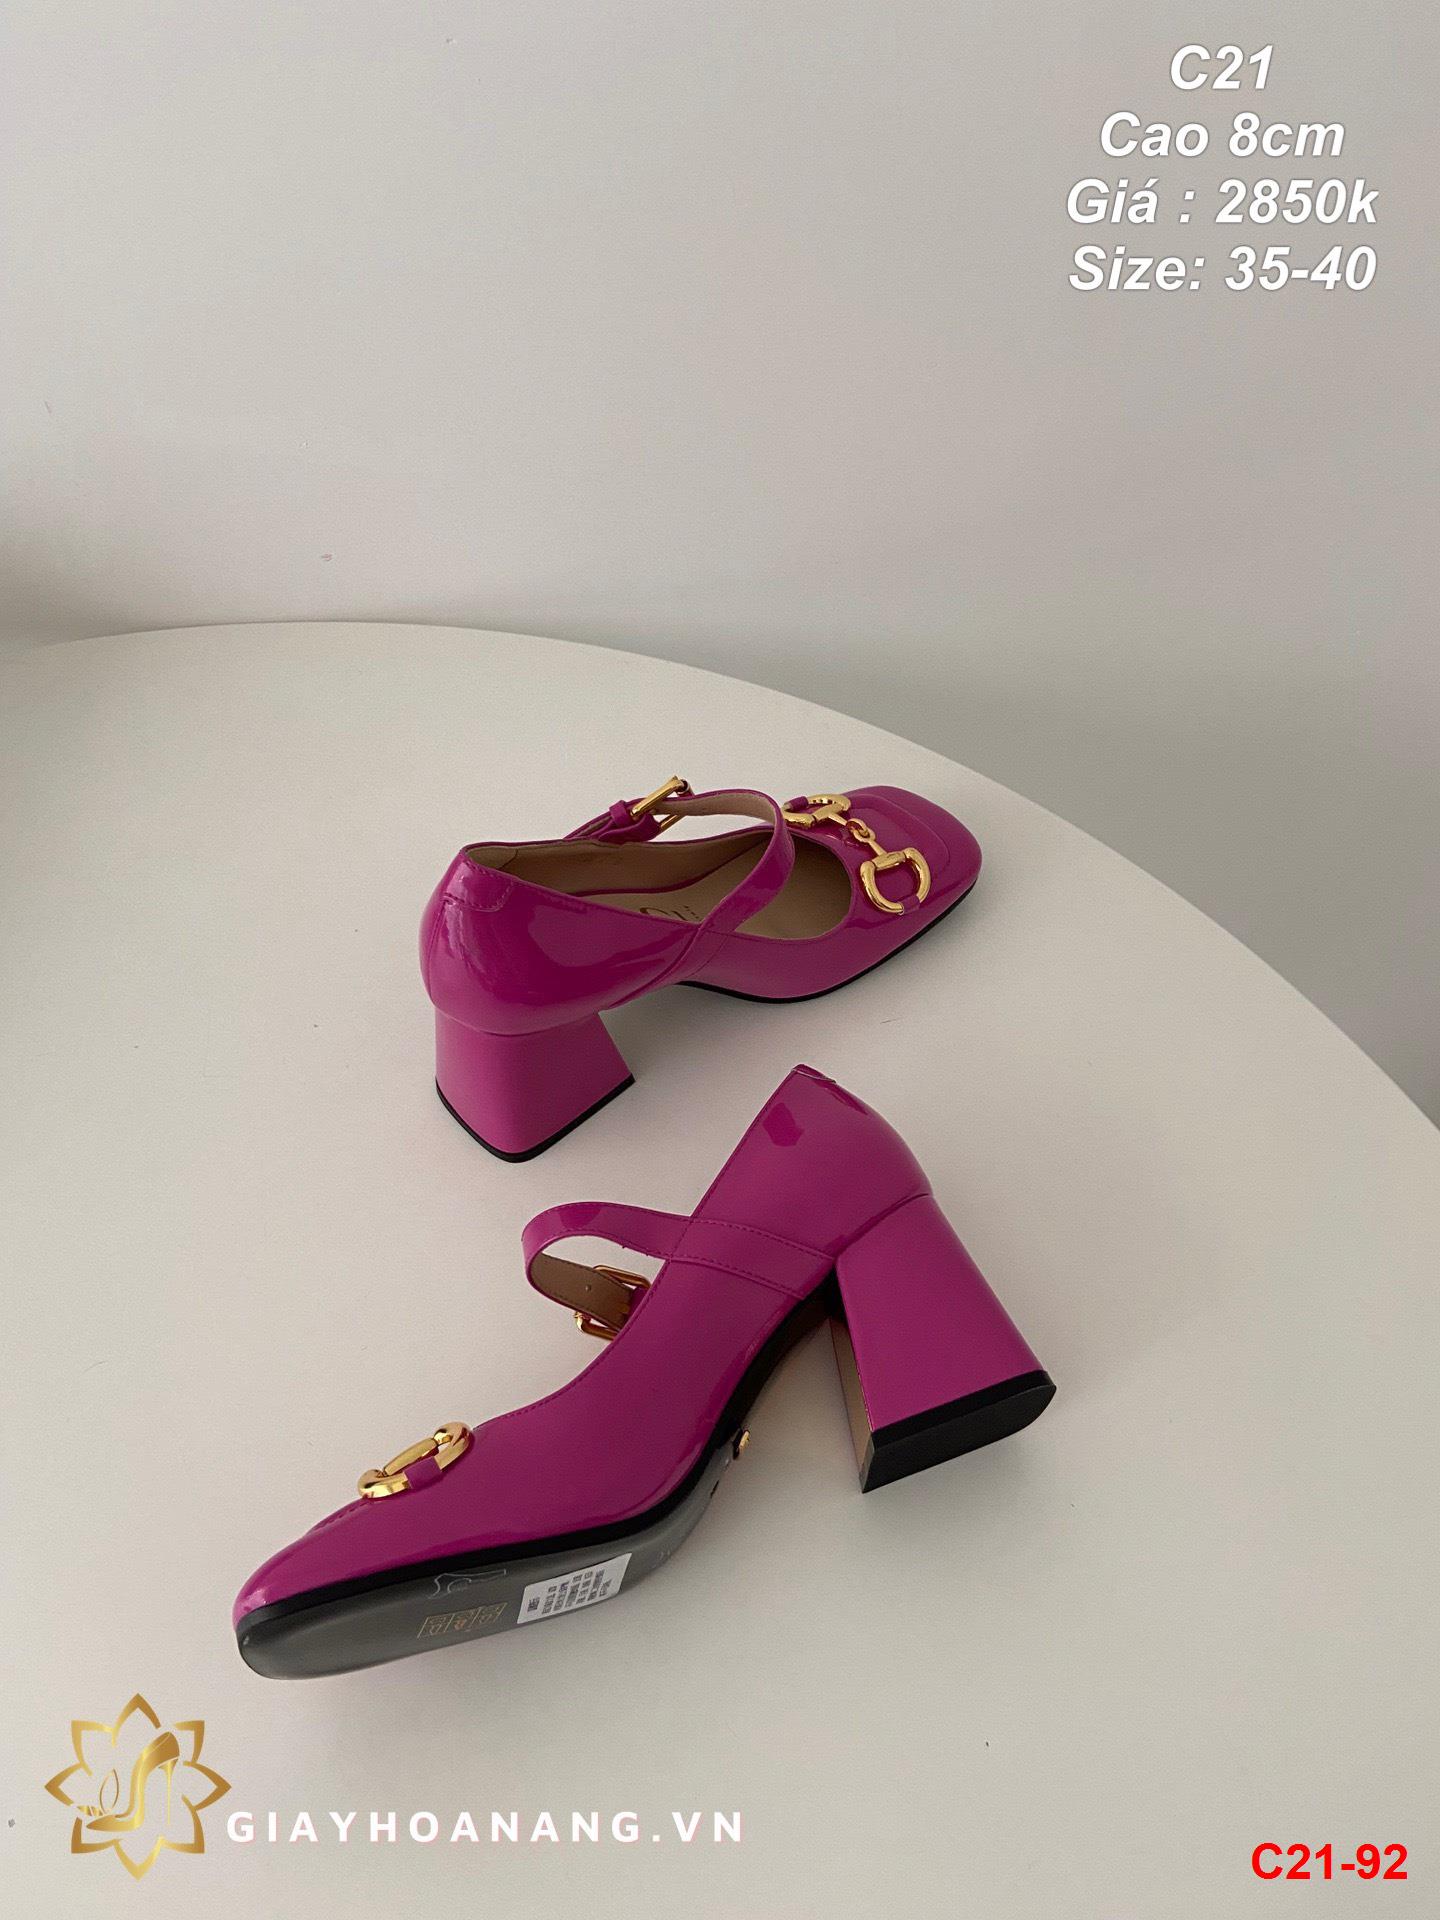 C21-92 Gucci giày cao 8cm siêu cấp